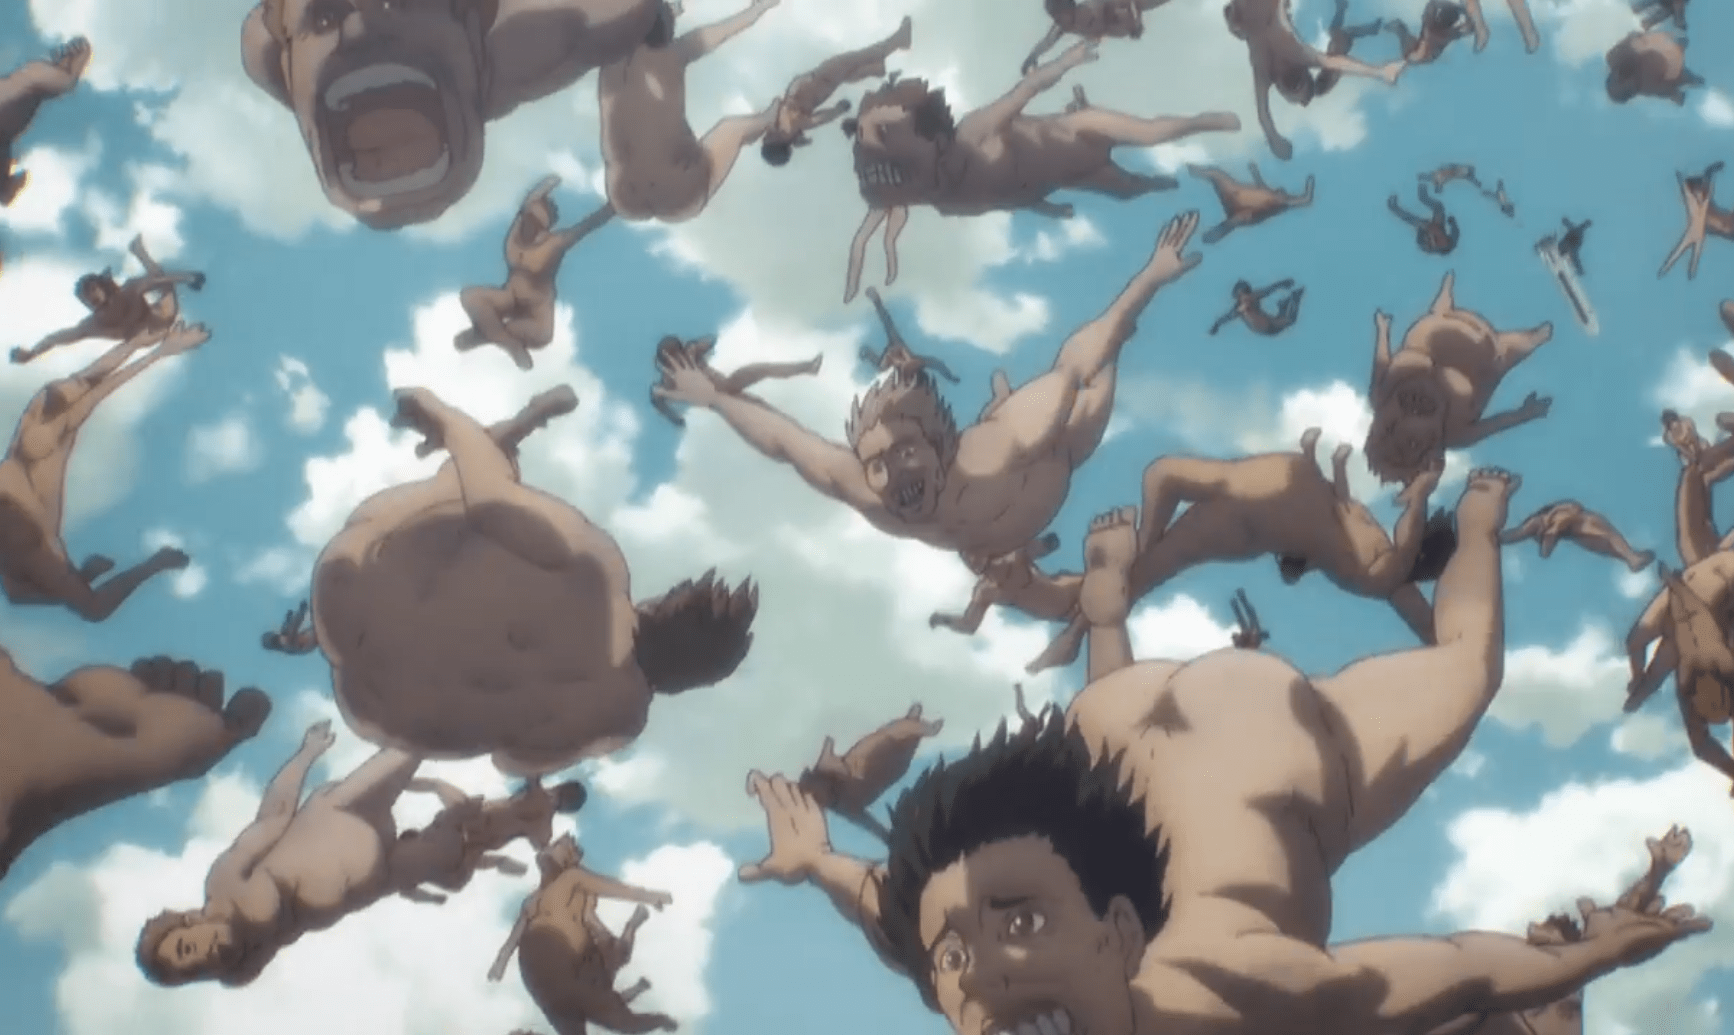 L'attacco dei giganti: il manga finirà ad aprile